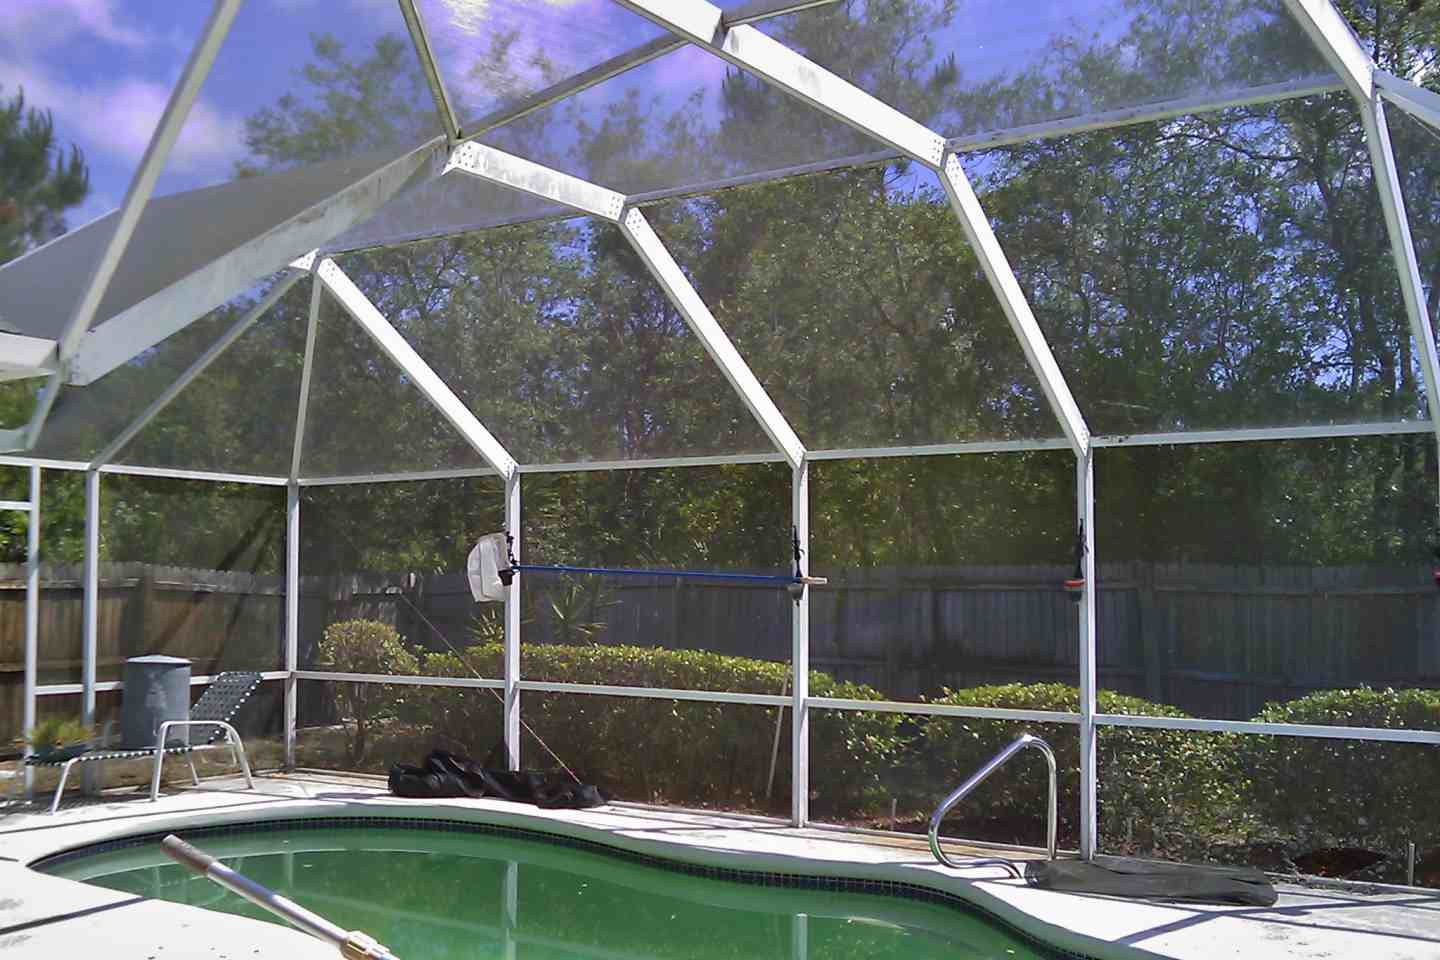 05-before-pool-enclosure-complete-re-screen.jpg